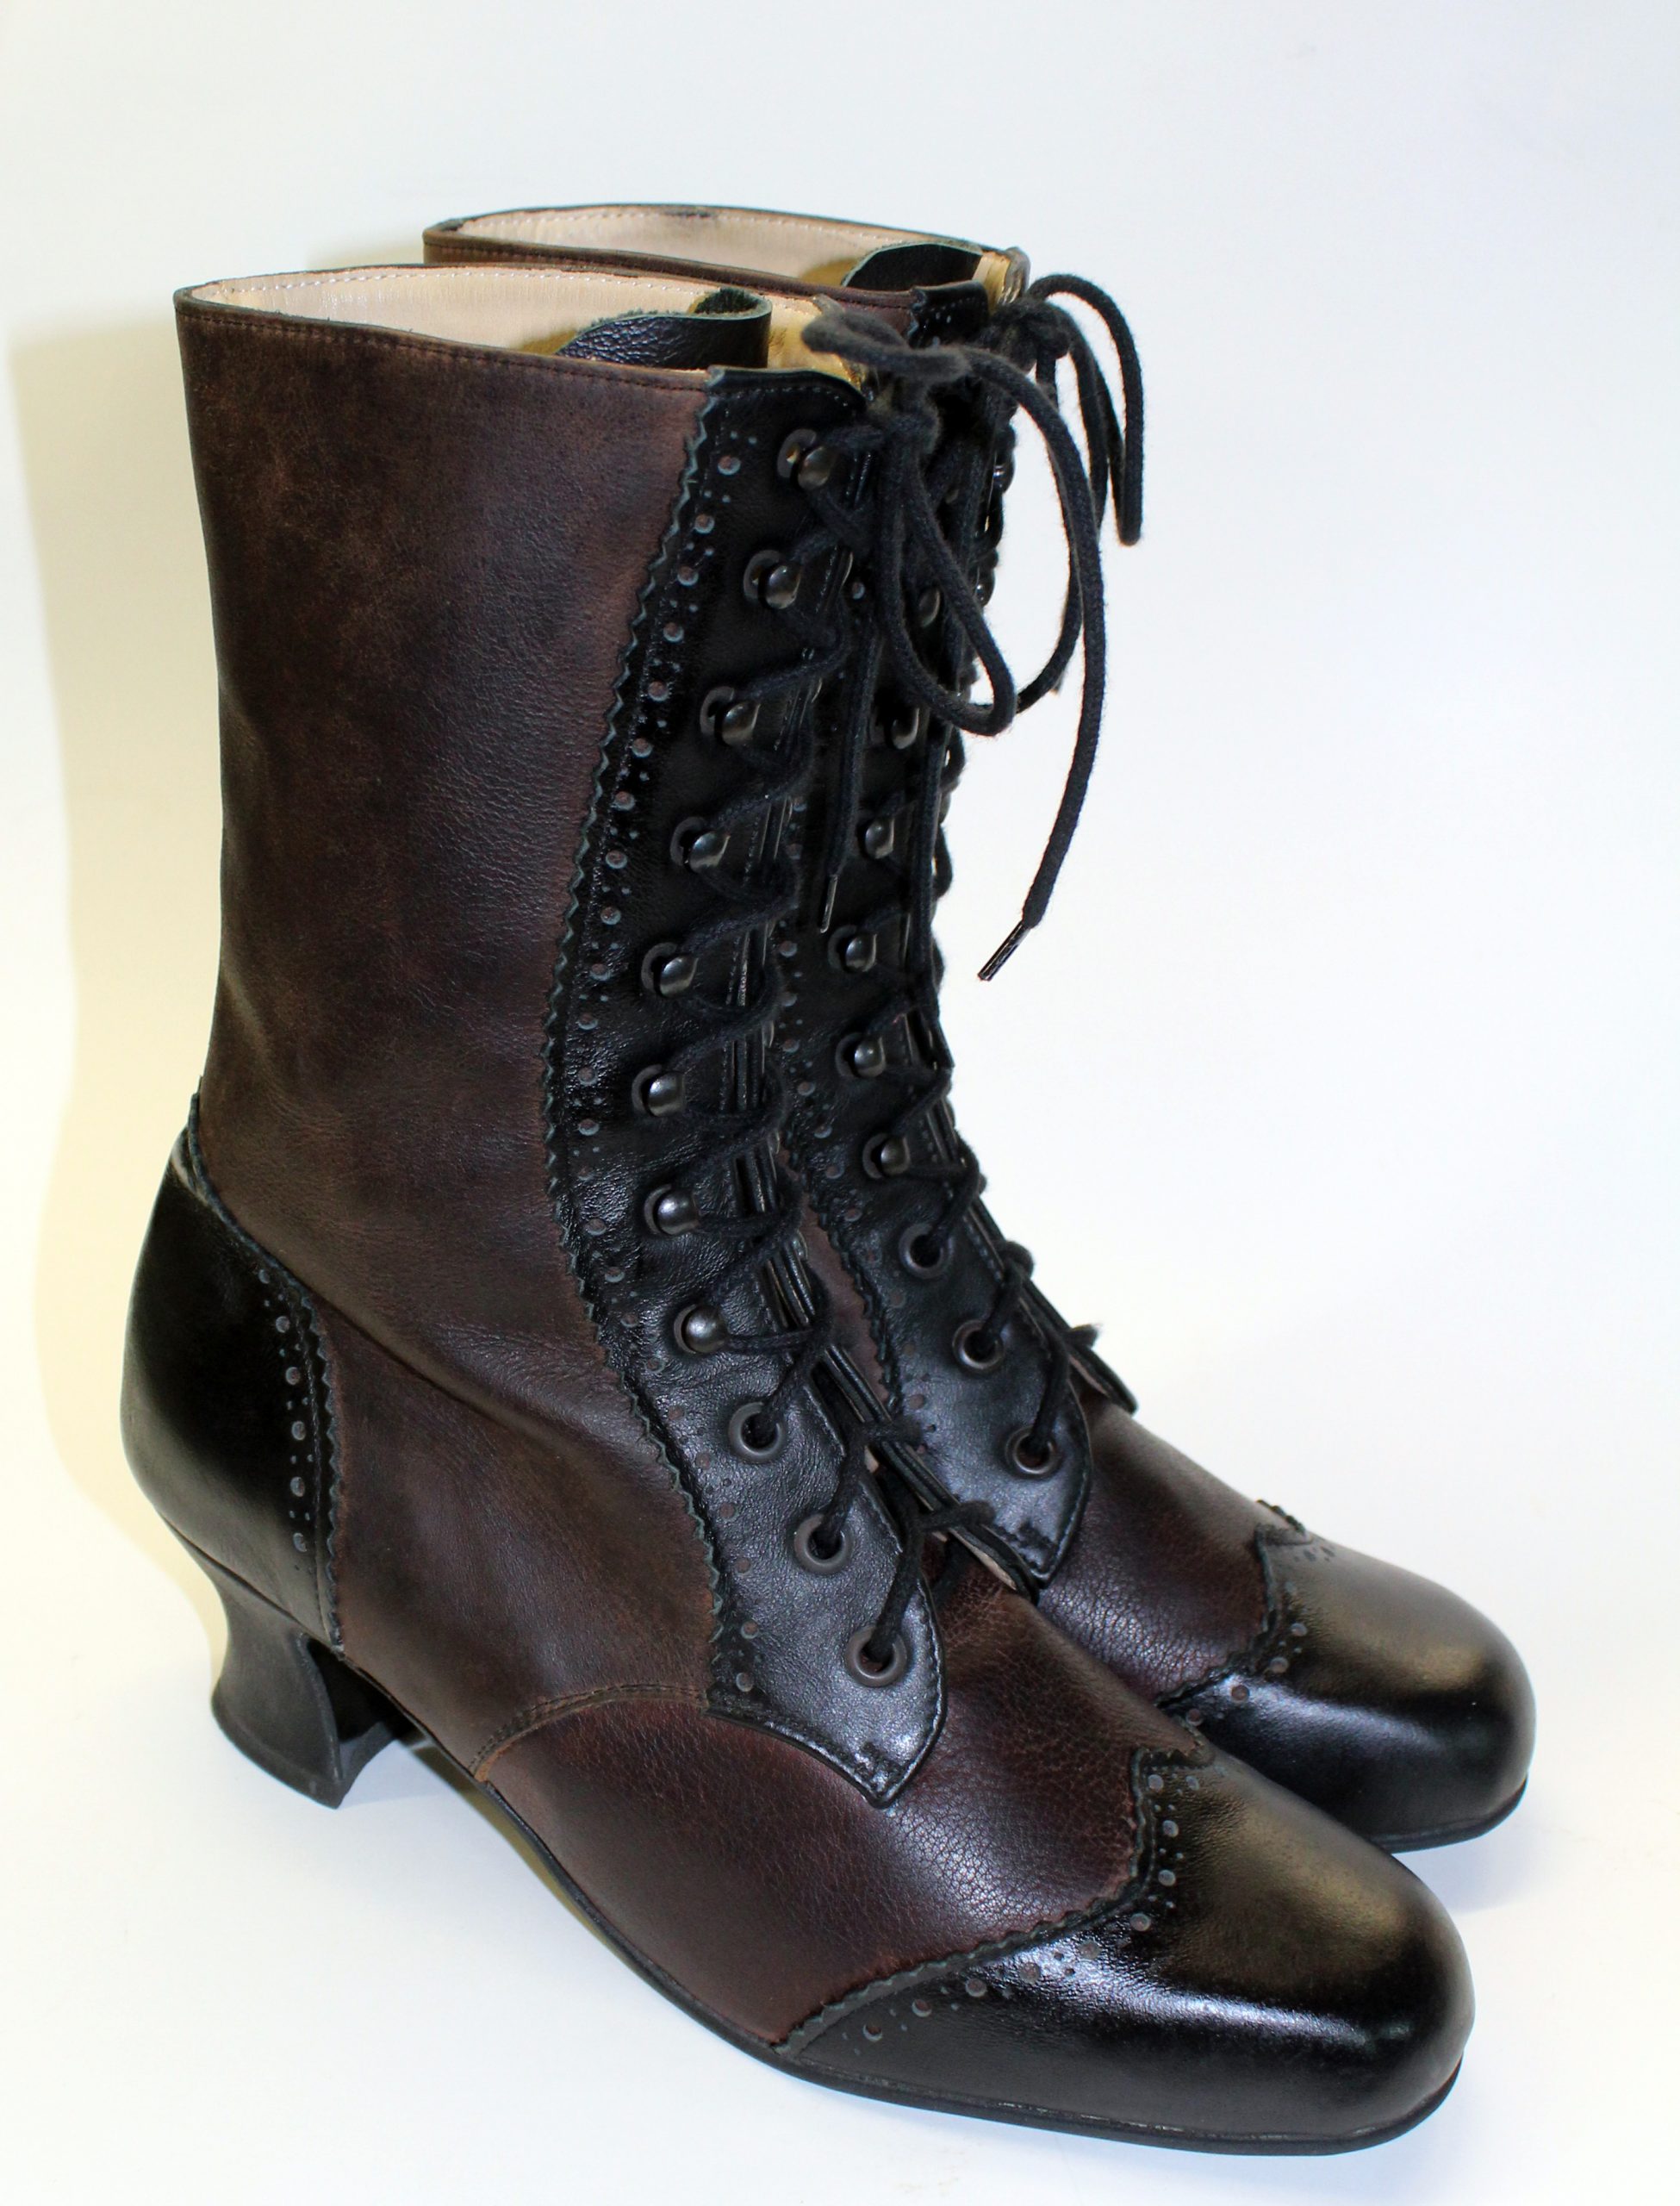 Victorian brogue boots – Pendragon Shoes